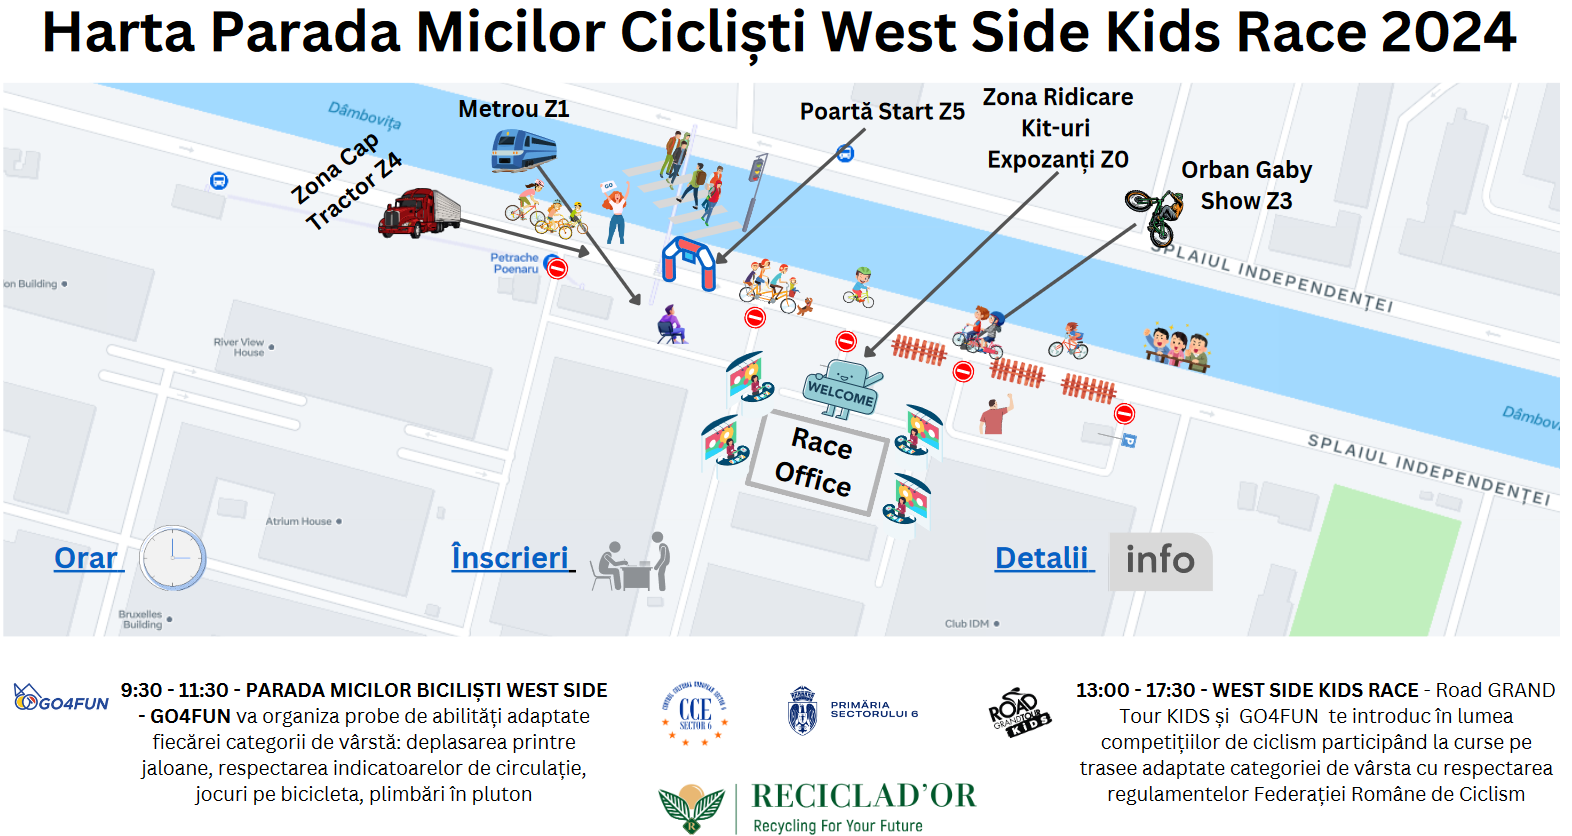 Harta Parada Micilor Bicicliști